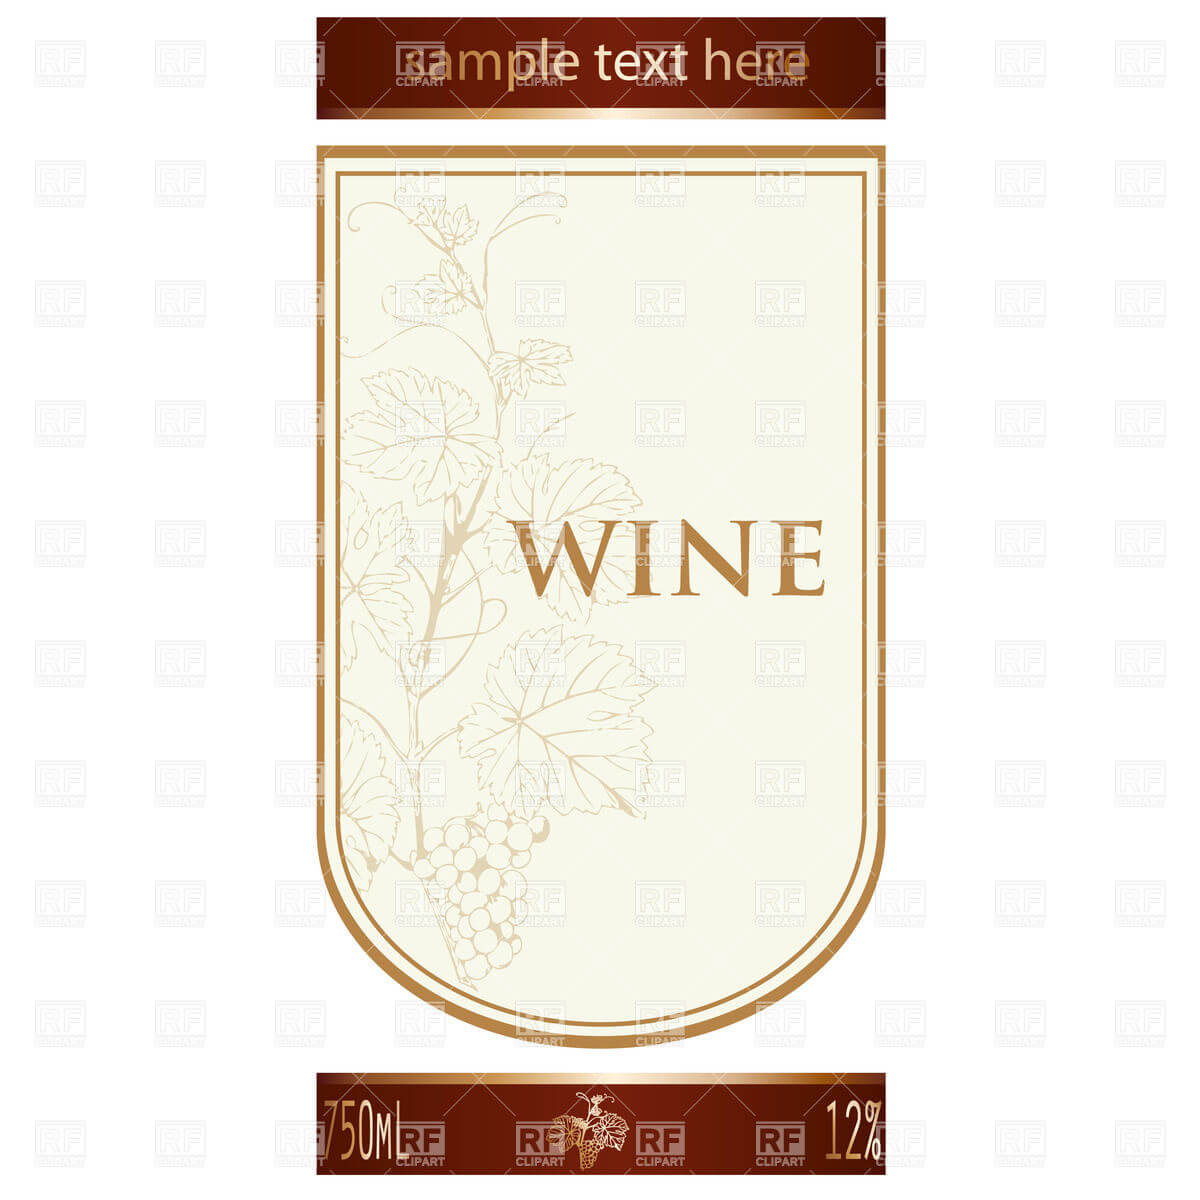 002 Template Ideas Free Wine Label Remarkable Bottle In Blank Wine Label Template